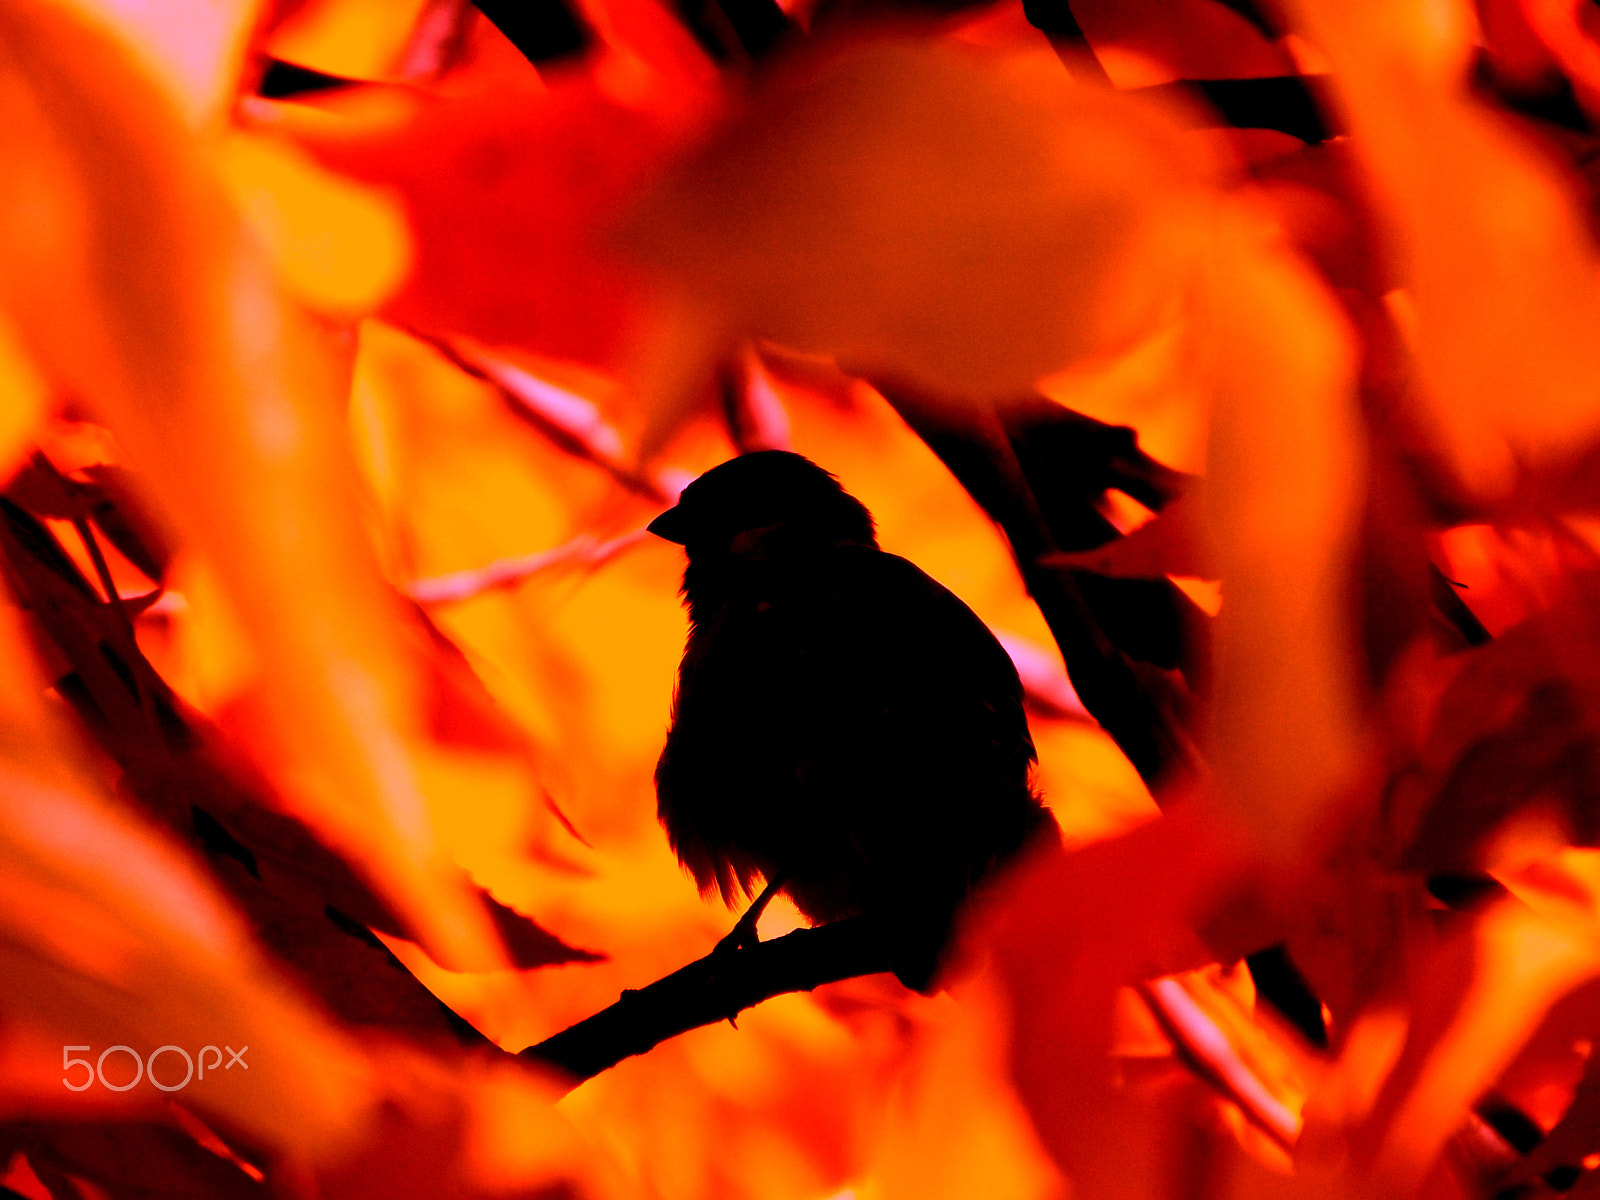 Fujifilm FinePix SL240 sample photo. Fiery birdie photography